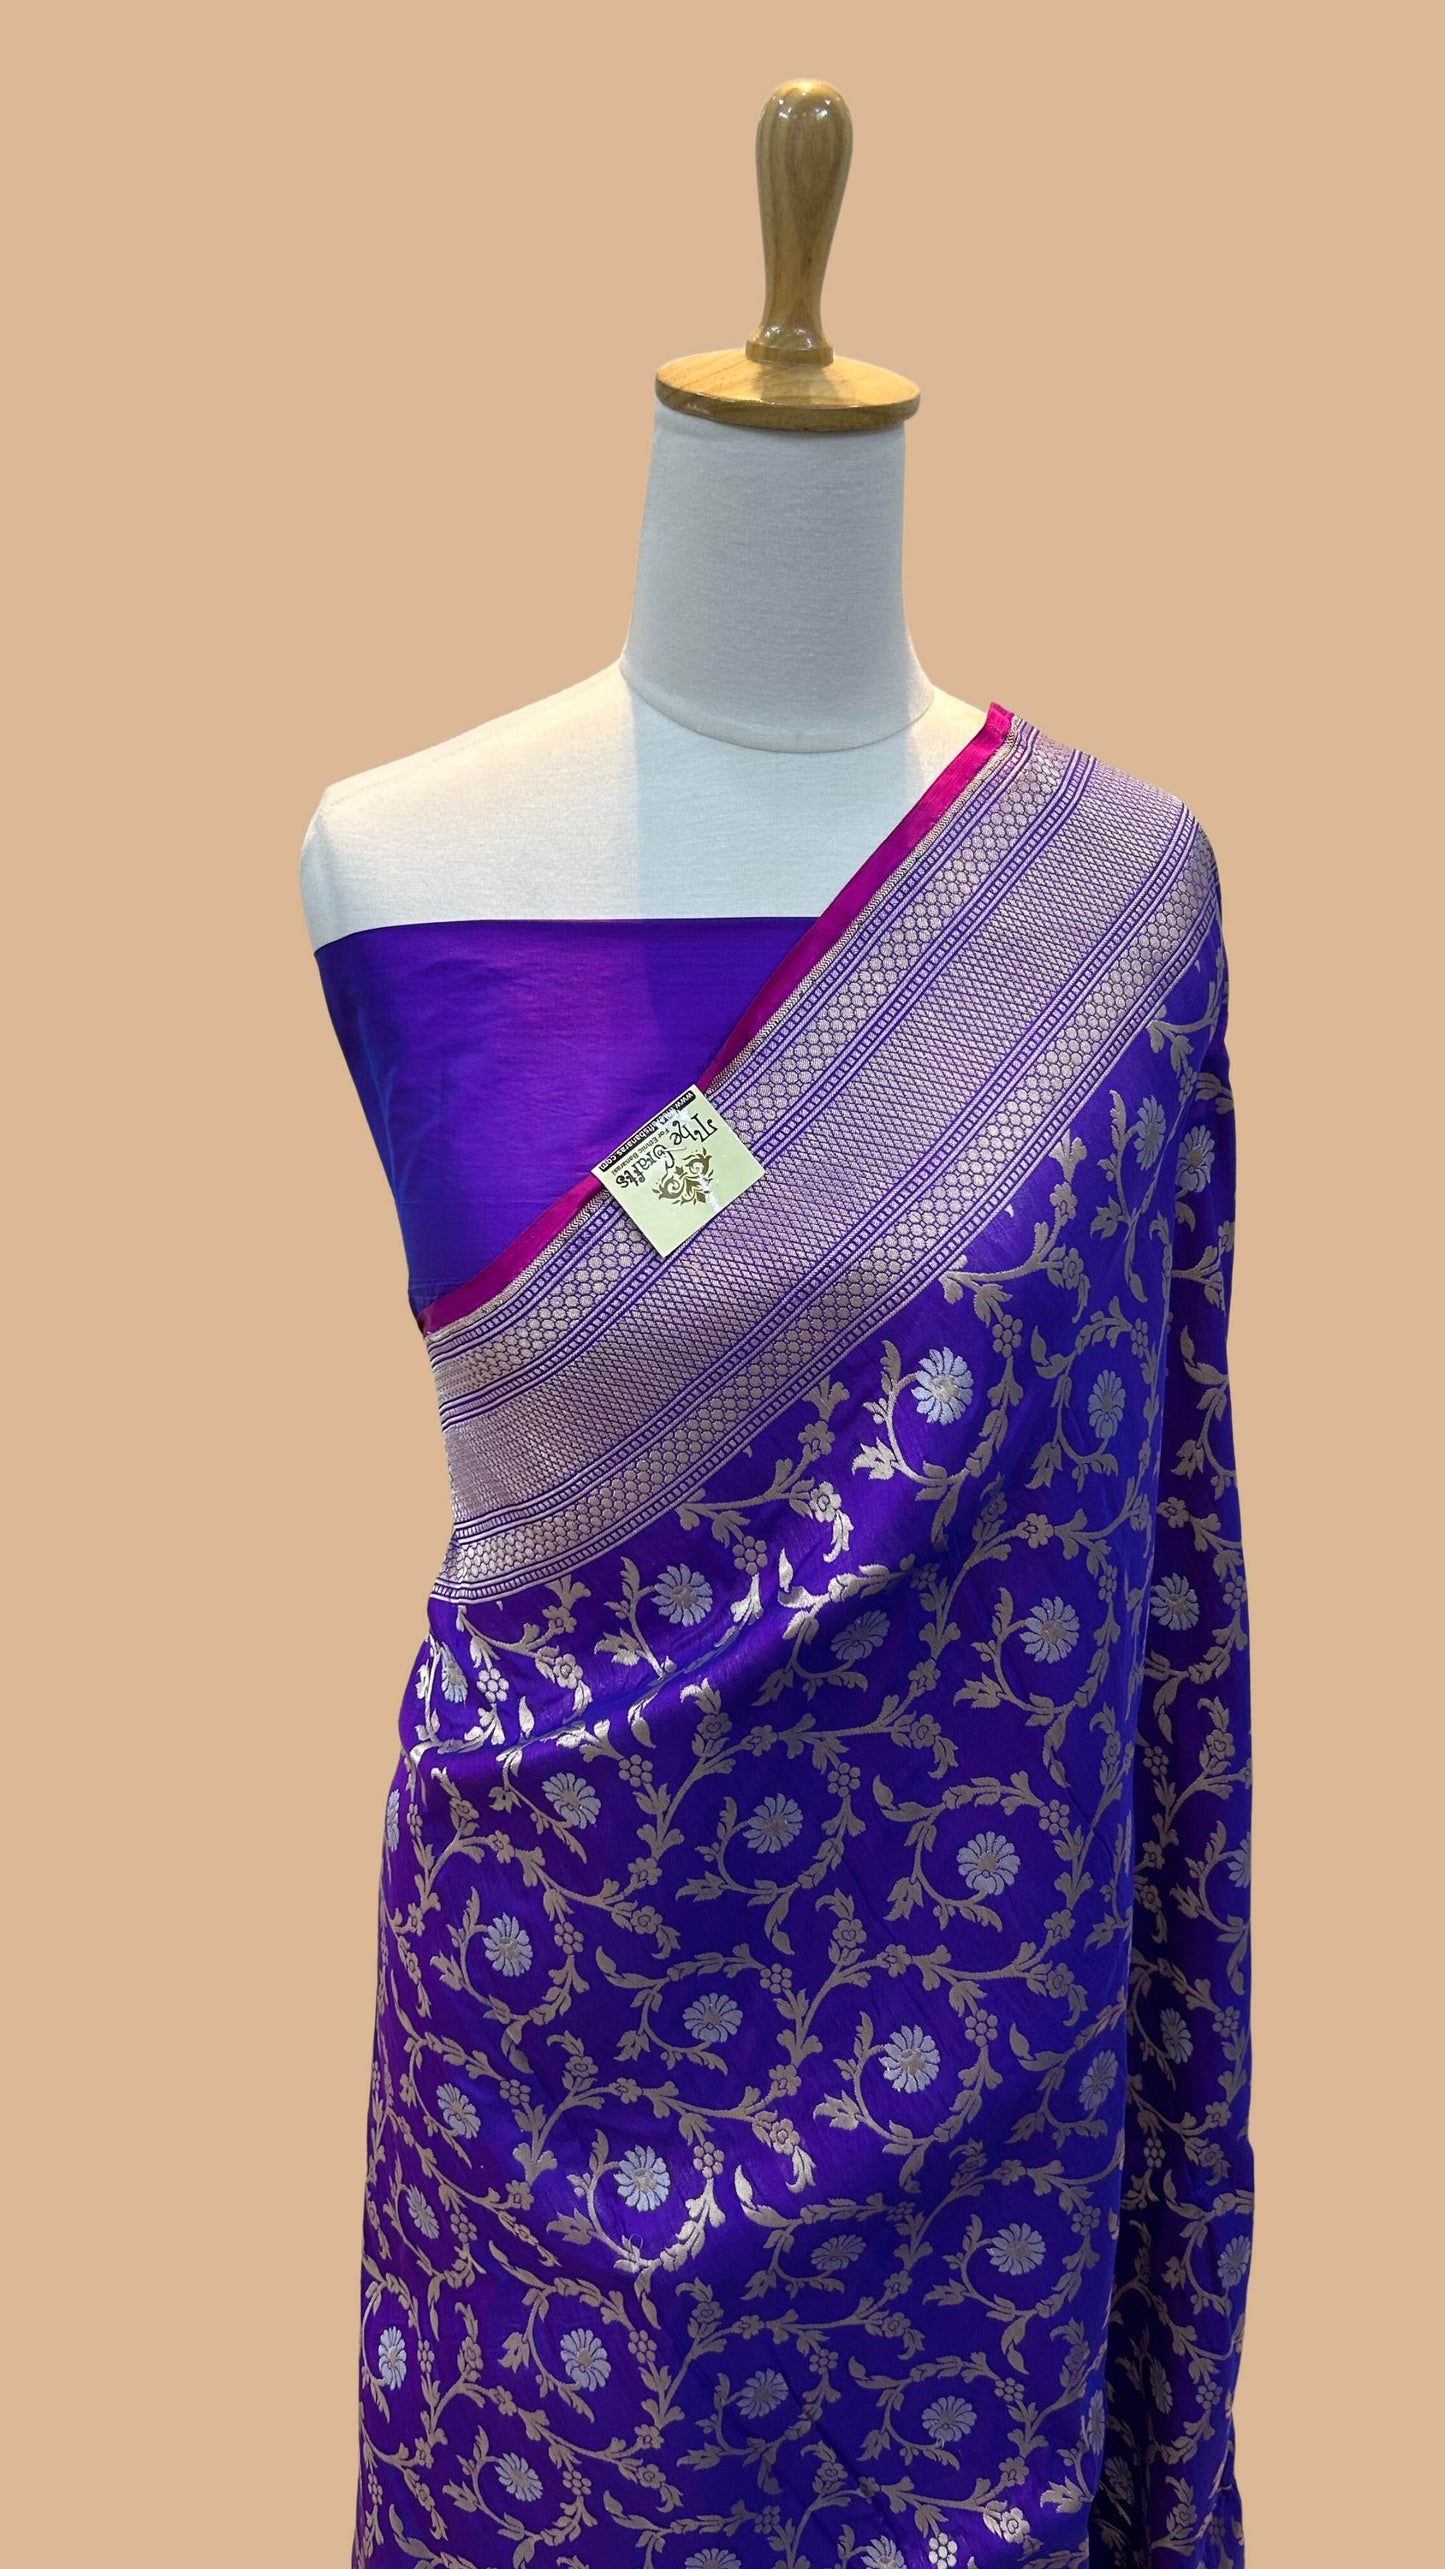 Pure Katan Silk Handloom Banarasi Saree - All over sona roopa jaal work